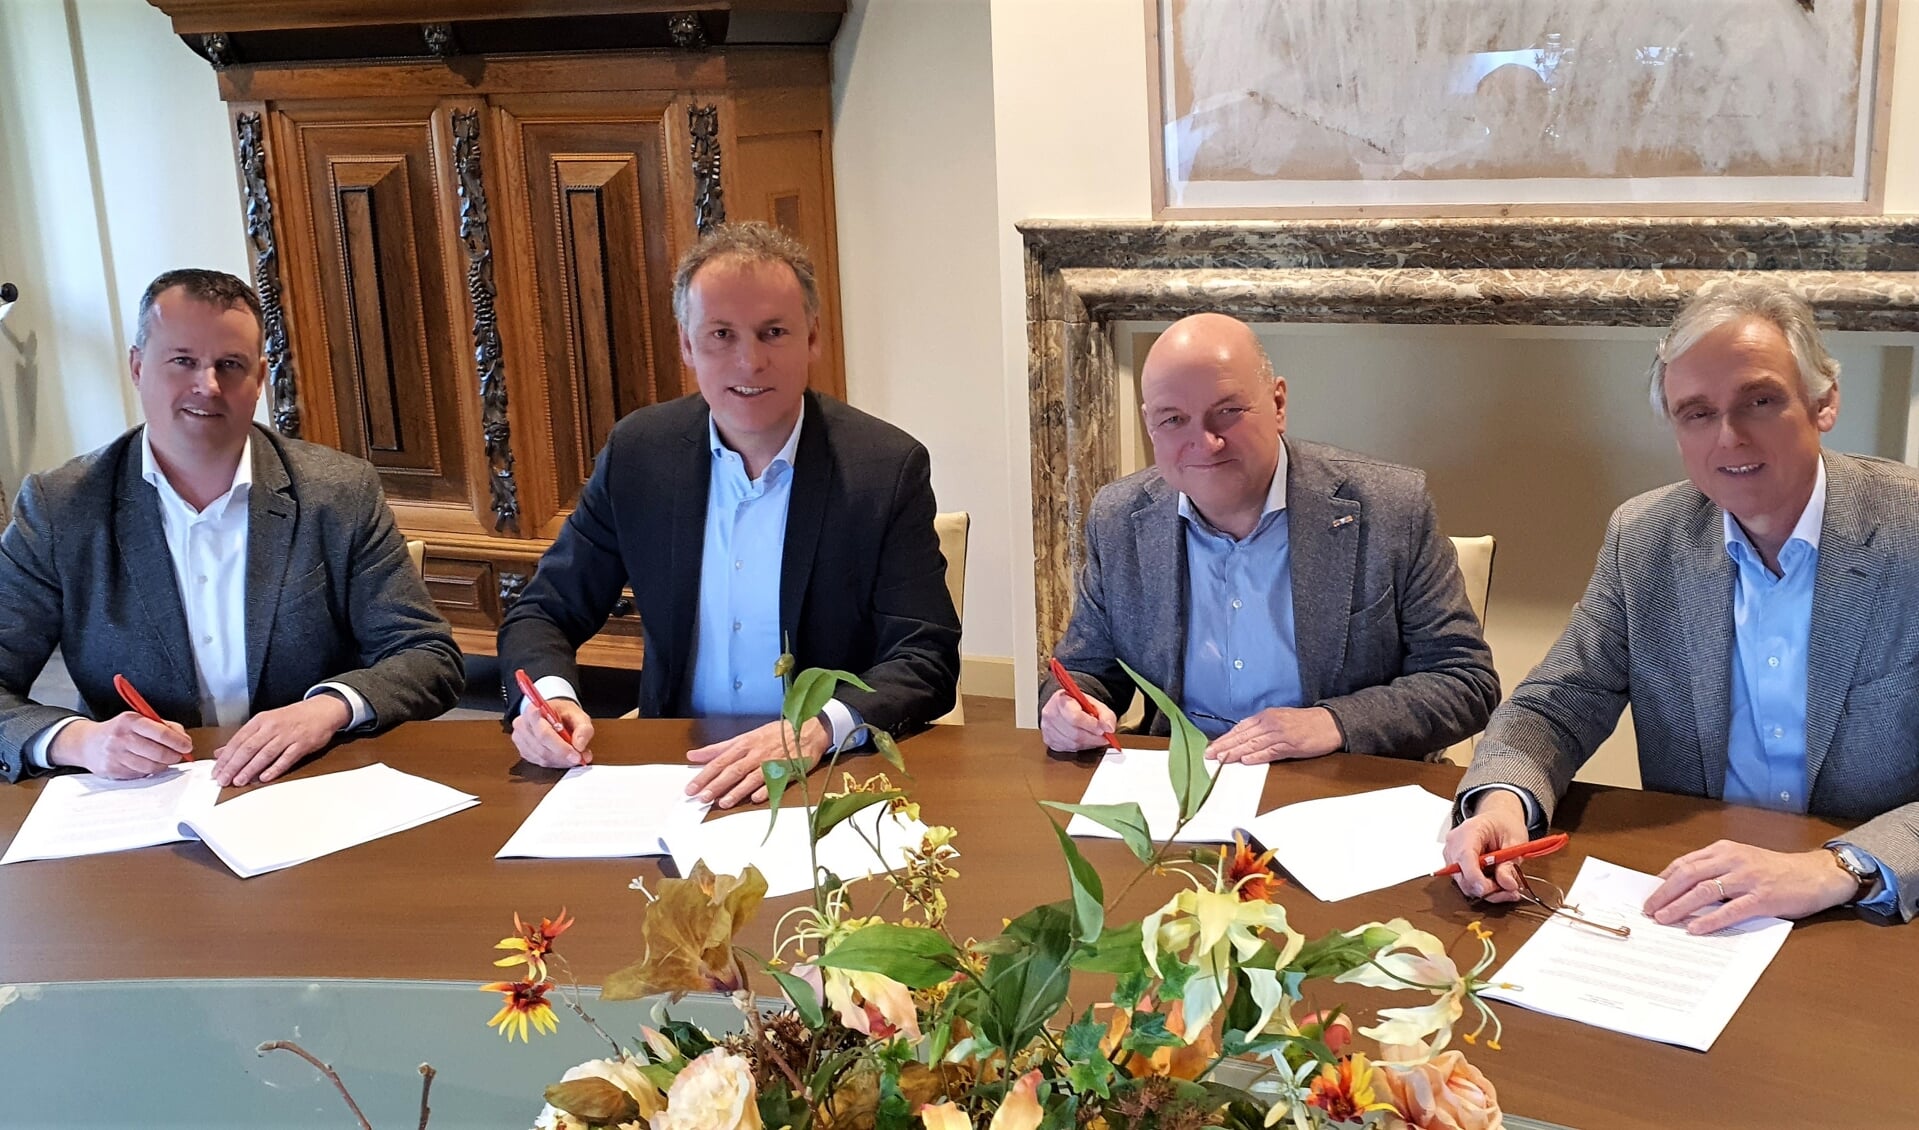 Stefan van Duijnhoven (Van de Klok), Geert Gerrits (wethouder gemeente Wijchen), Michiel Dankers (N.V. Niba Beheer) en Piet Jansen (Jansen Bouwontwikkeling) ondertekenen overeenkomst nieuwbouwplannen Wijchen-West.